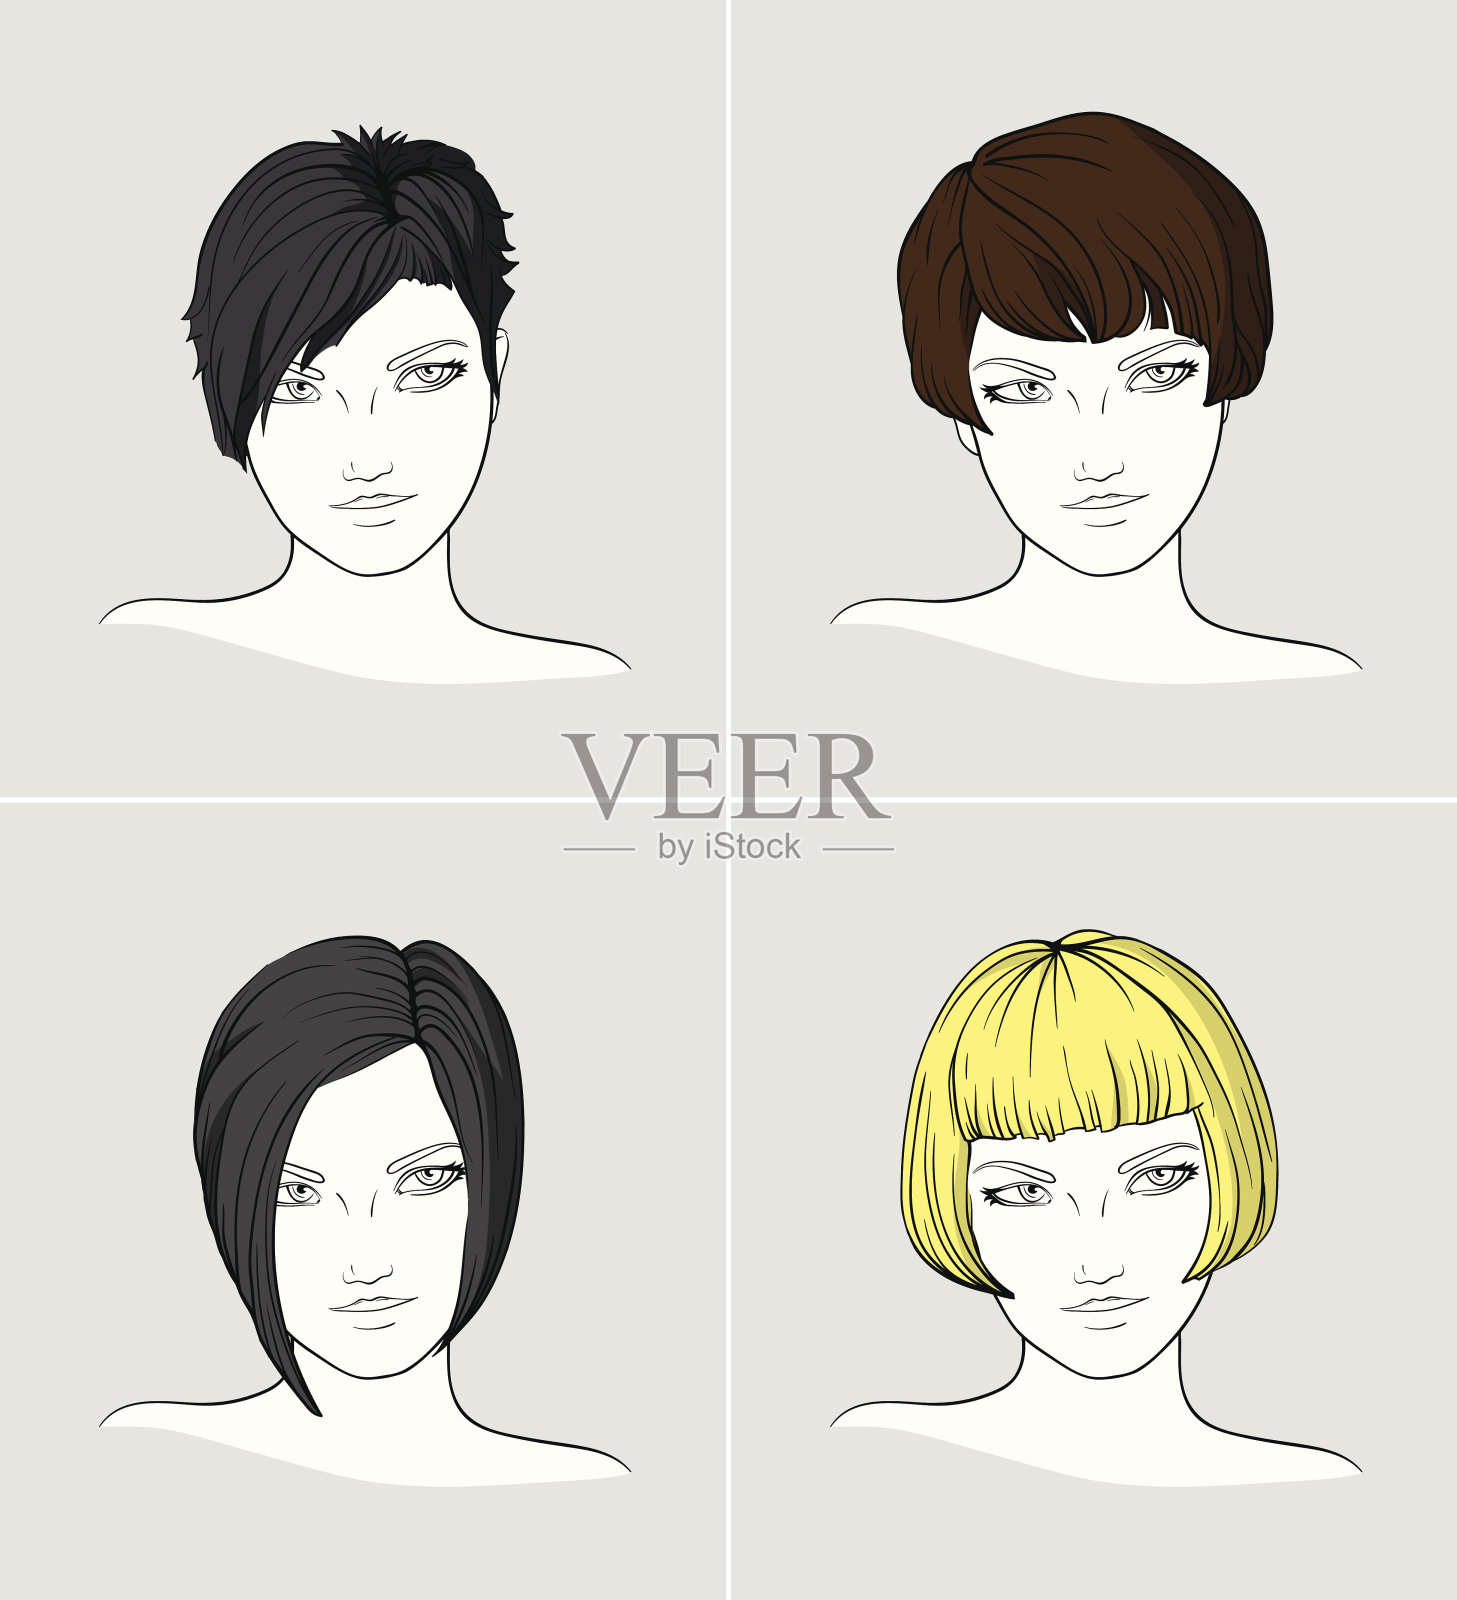 不同发型的女性肖像插画图片素材